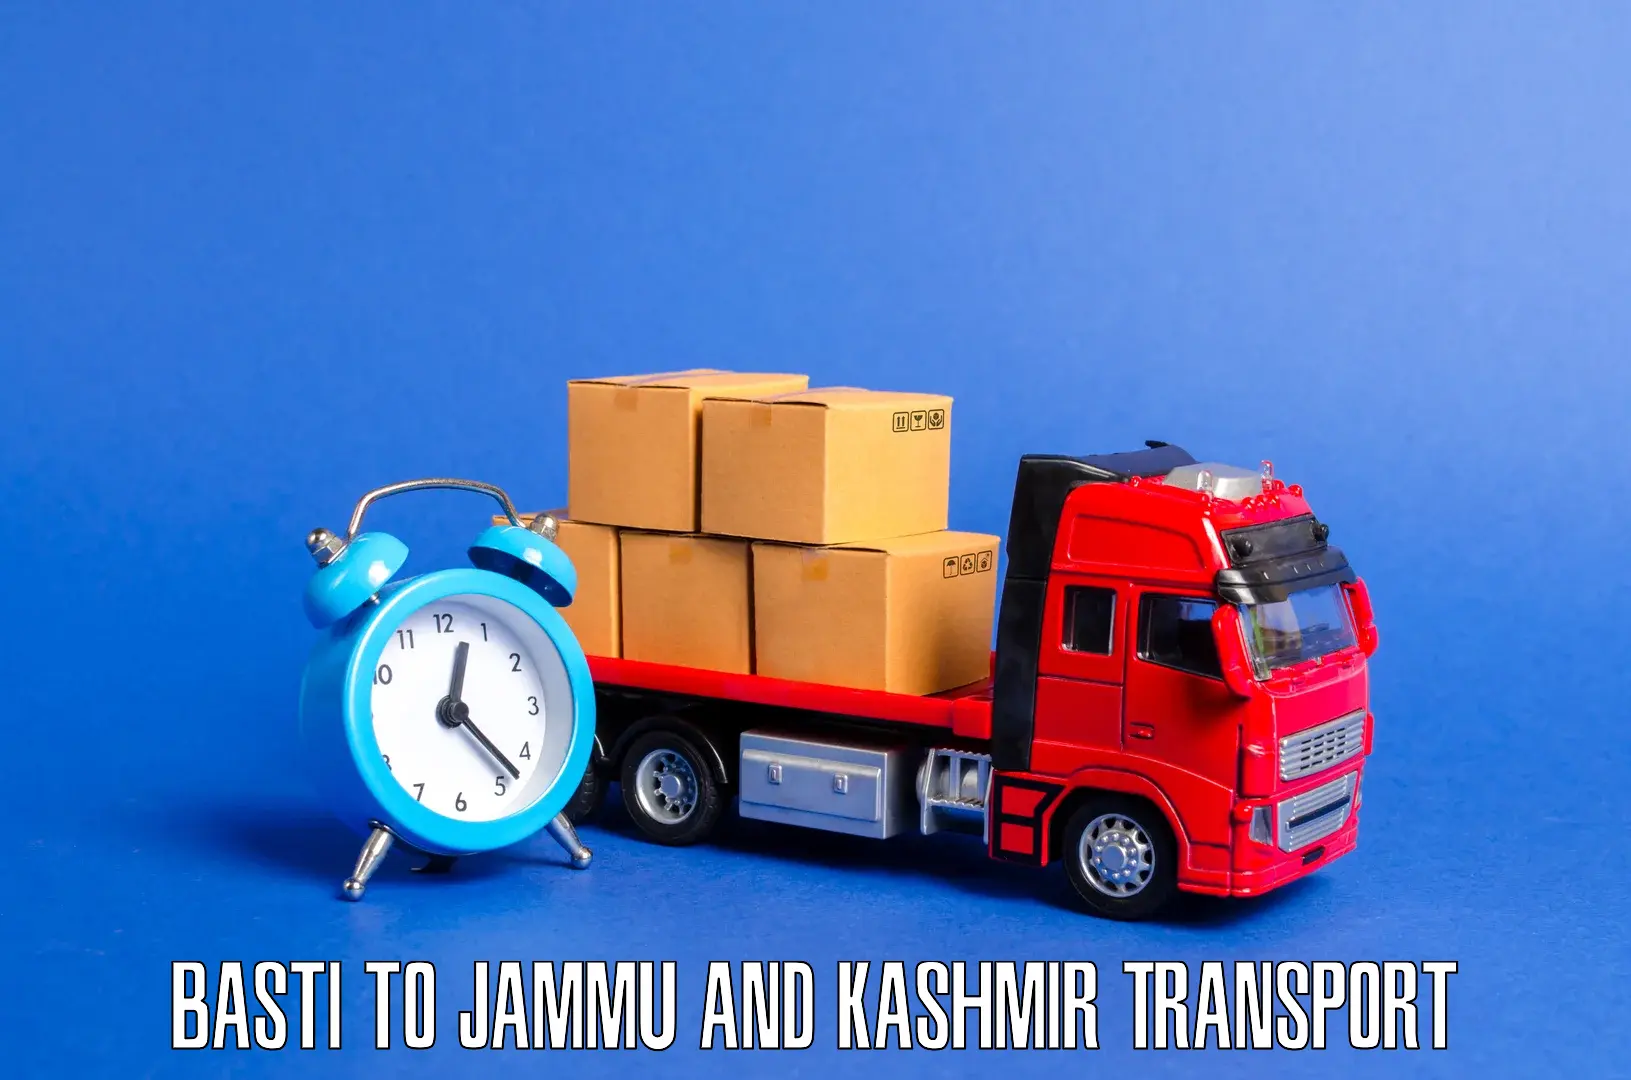 Bike transport service Basti to University of Jammu